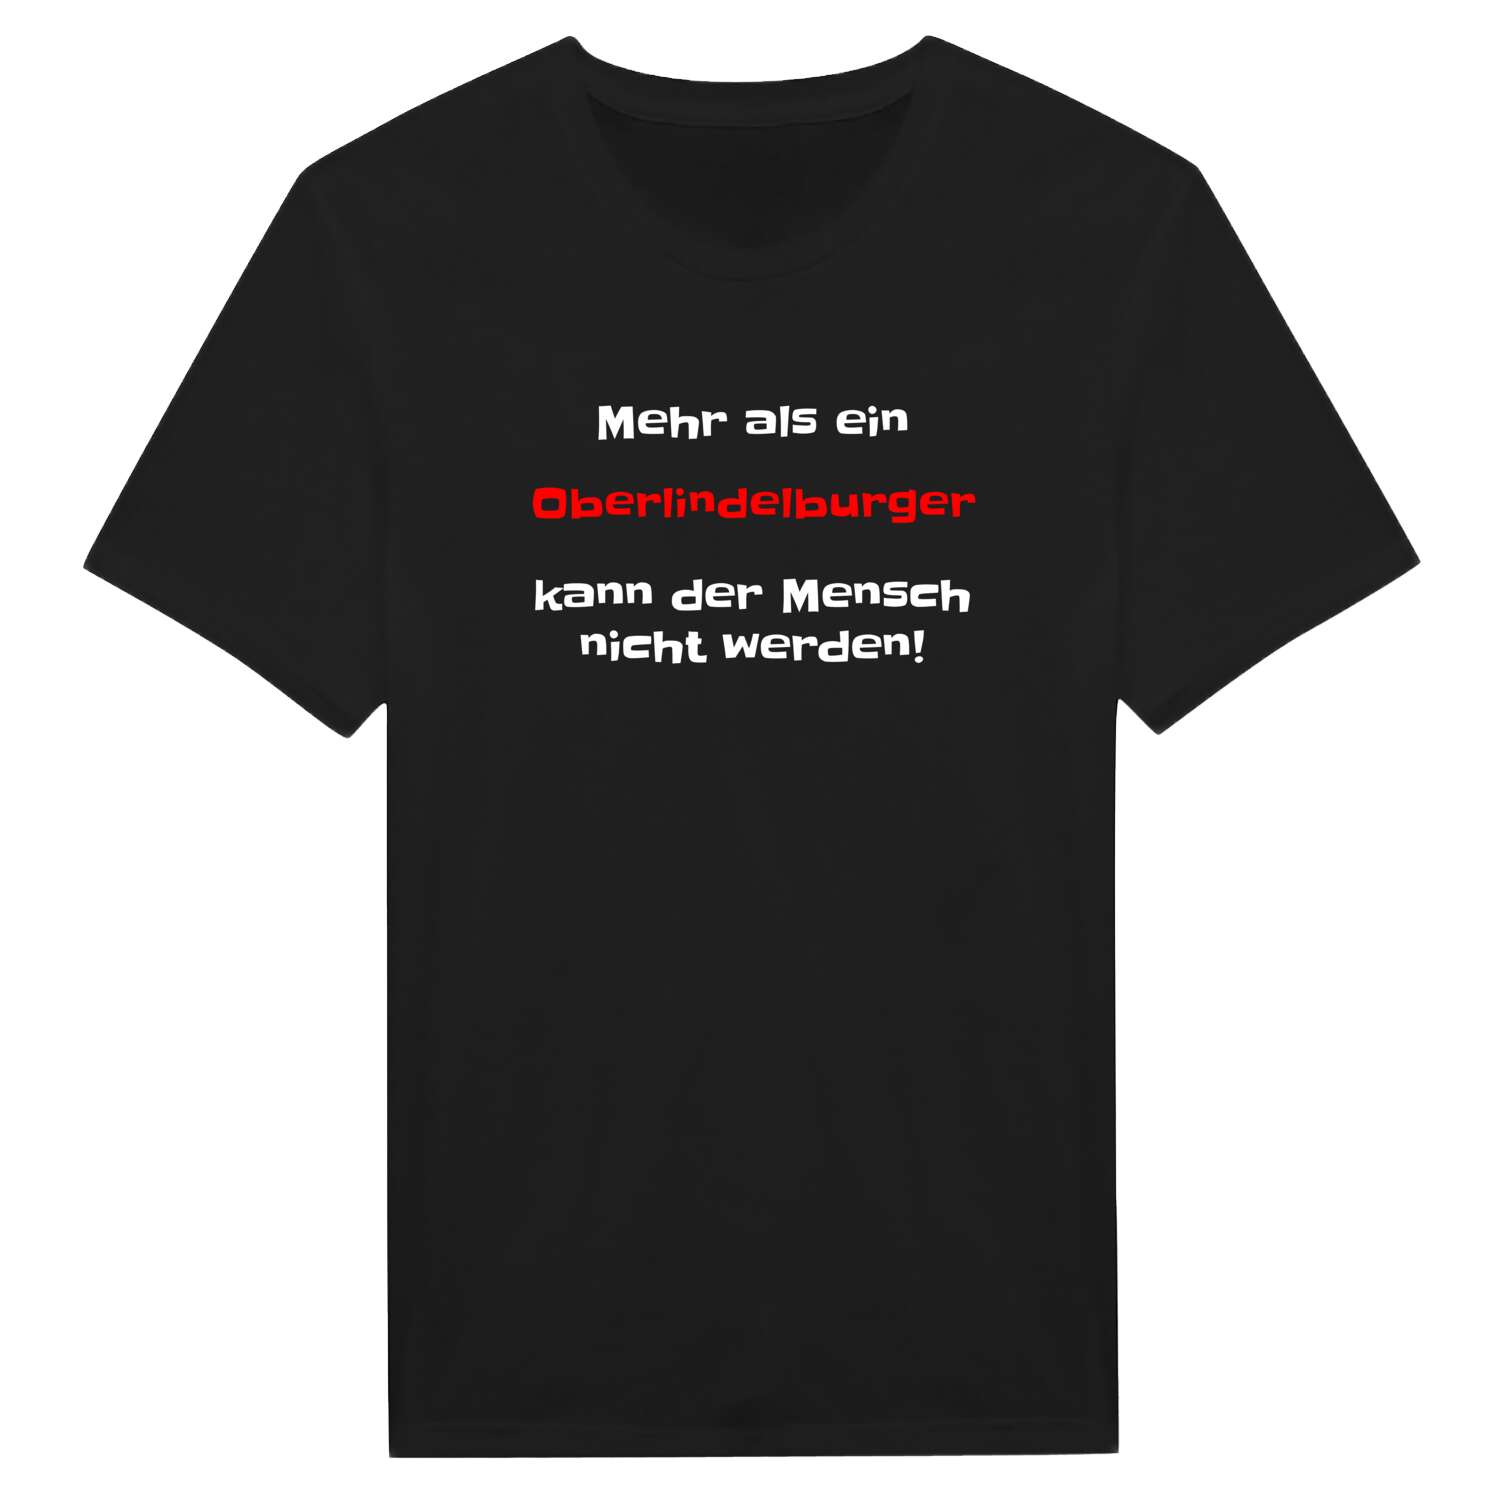 Oberlindelburg T-Shirt »Mehr als ein«